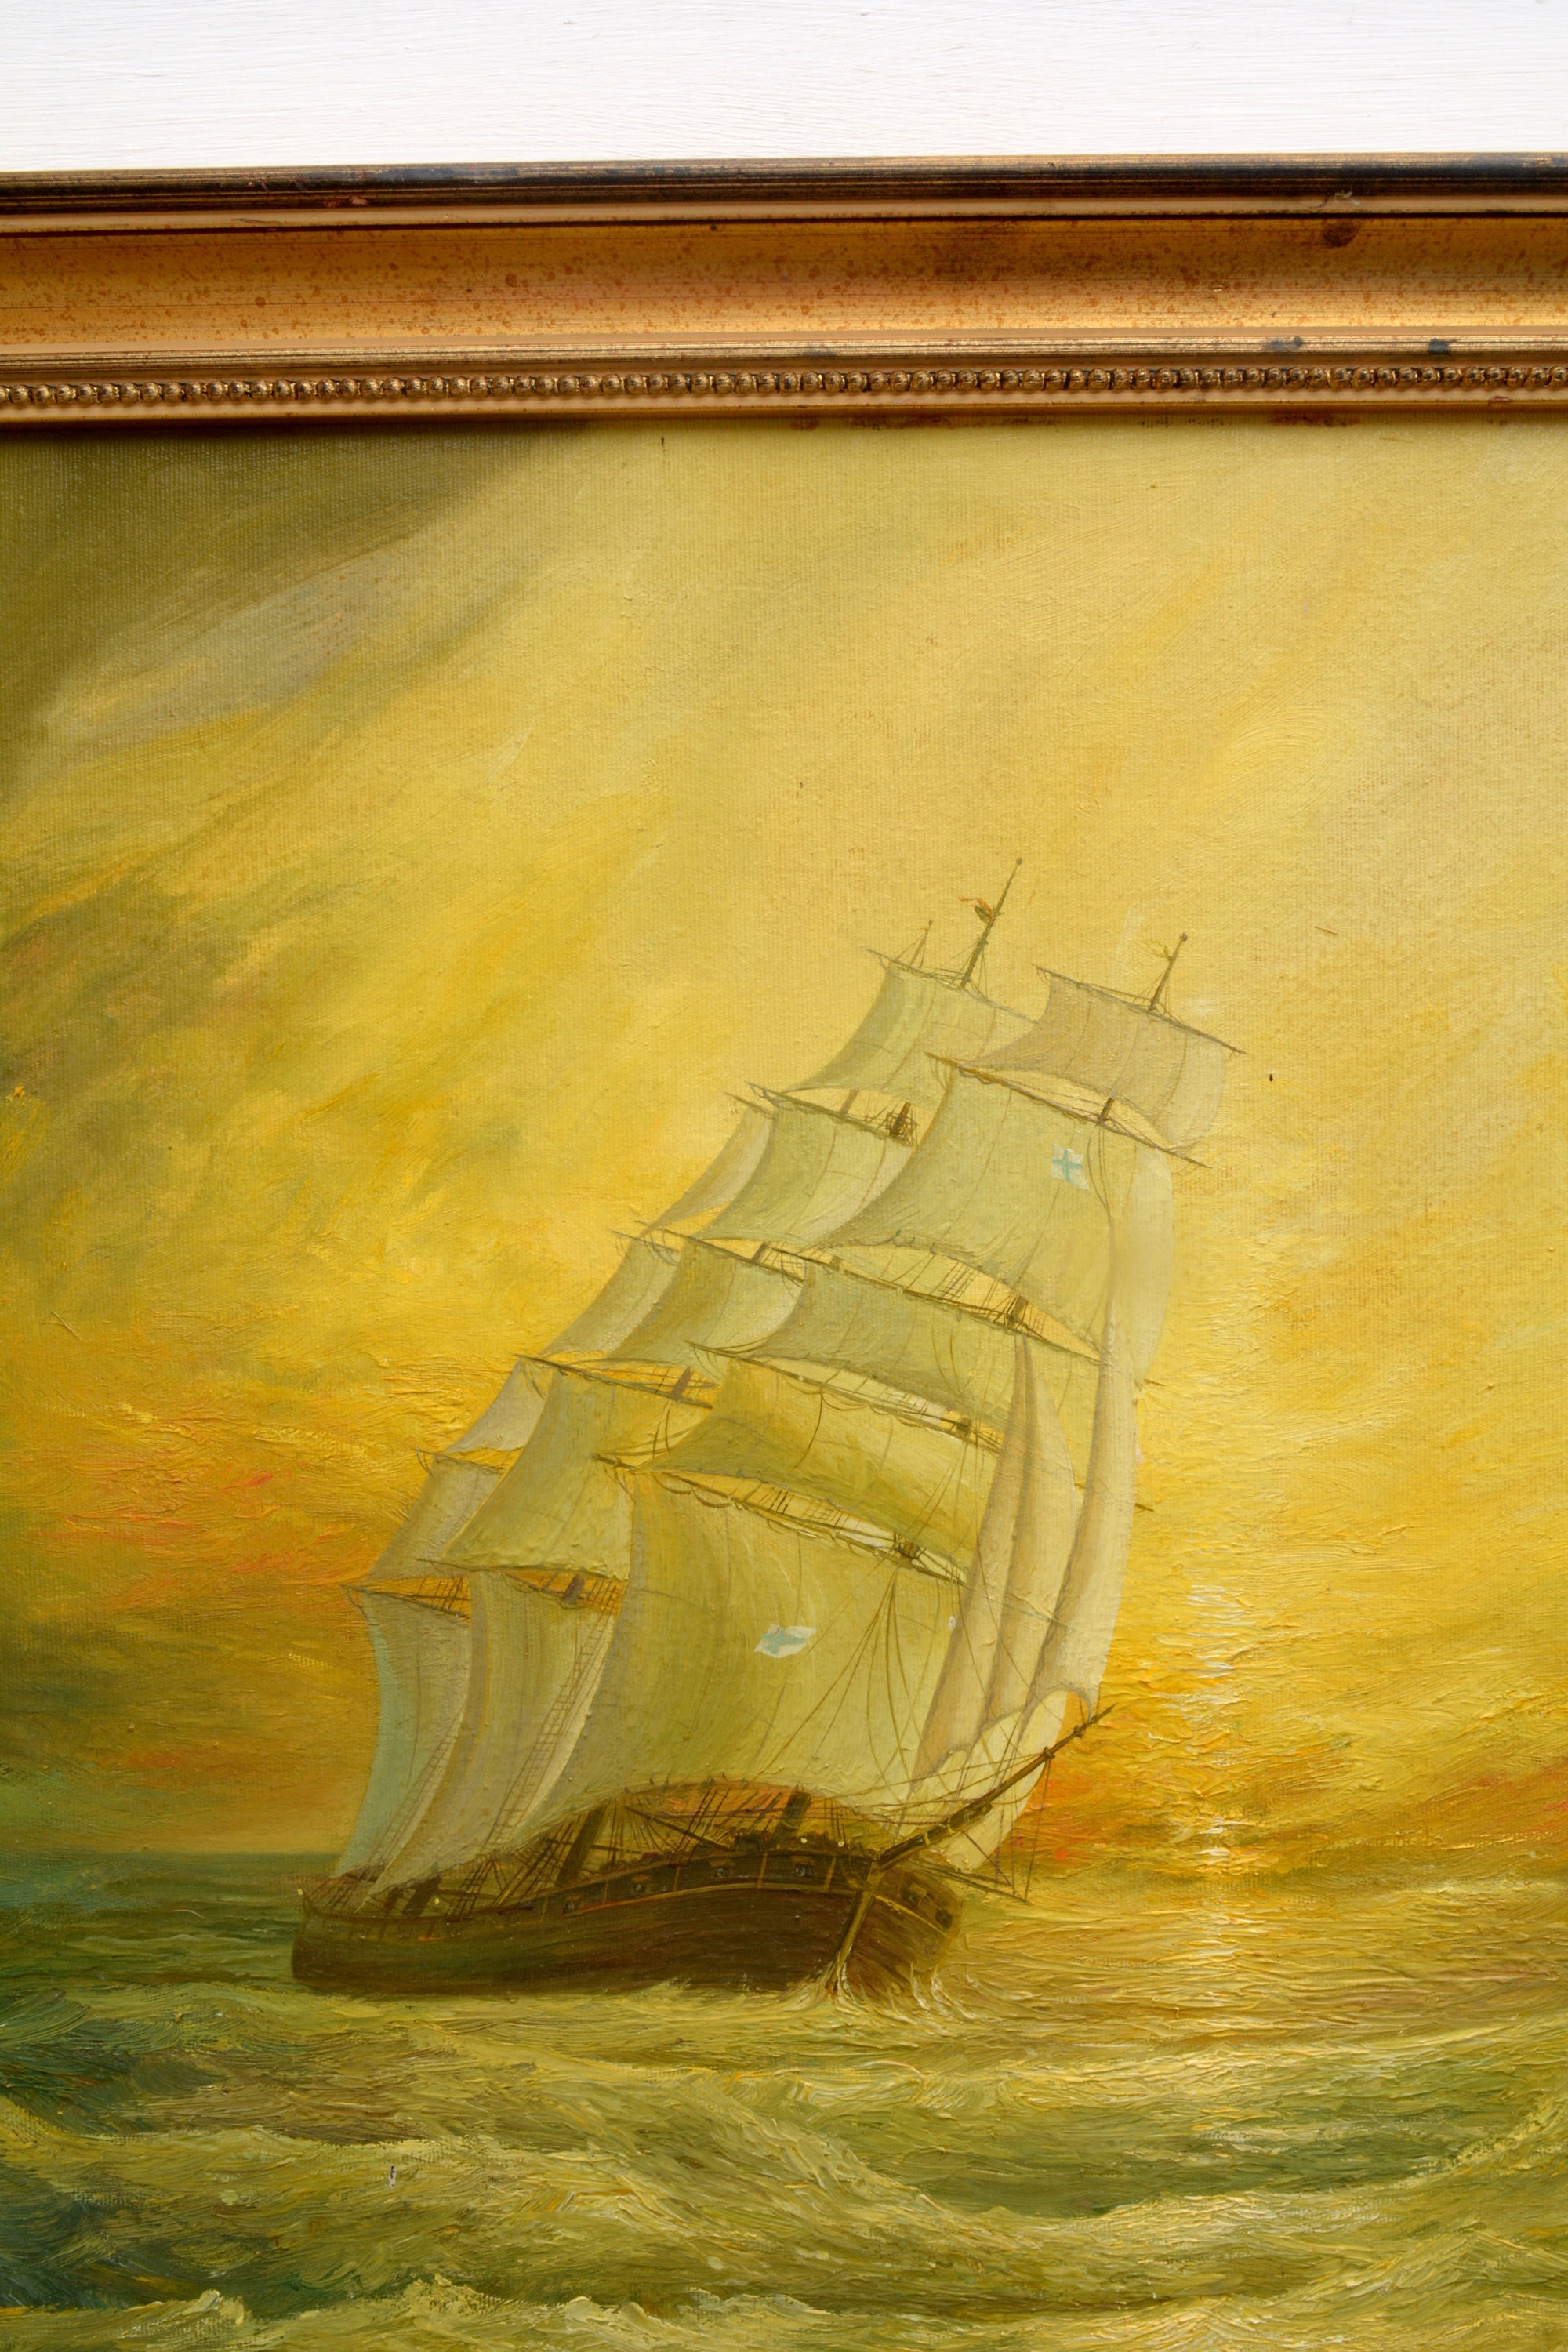 Large Seascape Sunset Oil Painting Vintage Sailing Boats Signed Framed